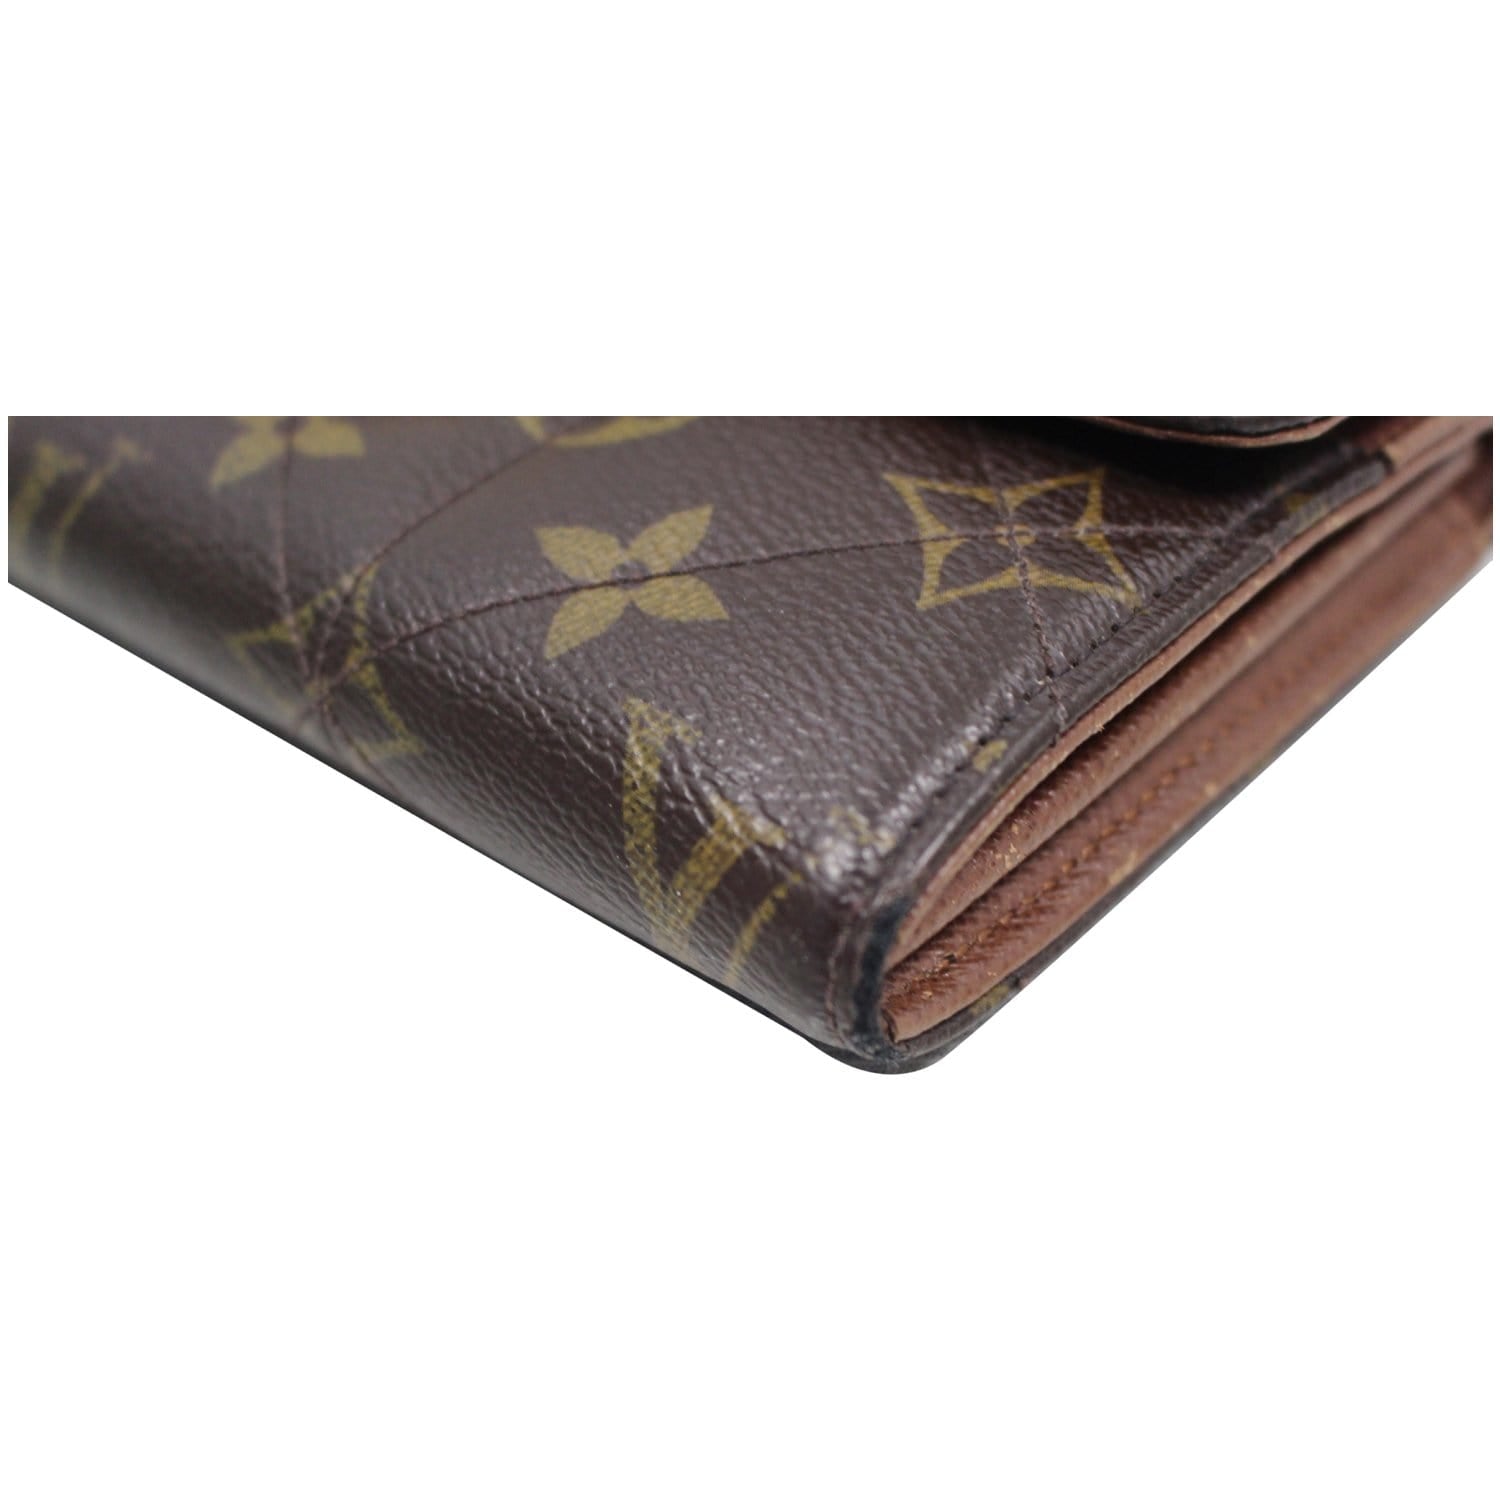 Authentic Louis Vuitton Etoile sarah wallet Monogram canvas – JOY'S CLASSY  COLLECTION